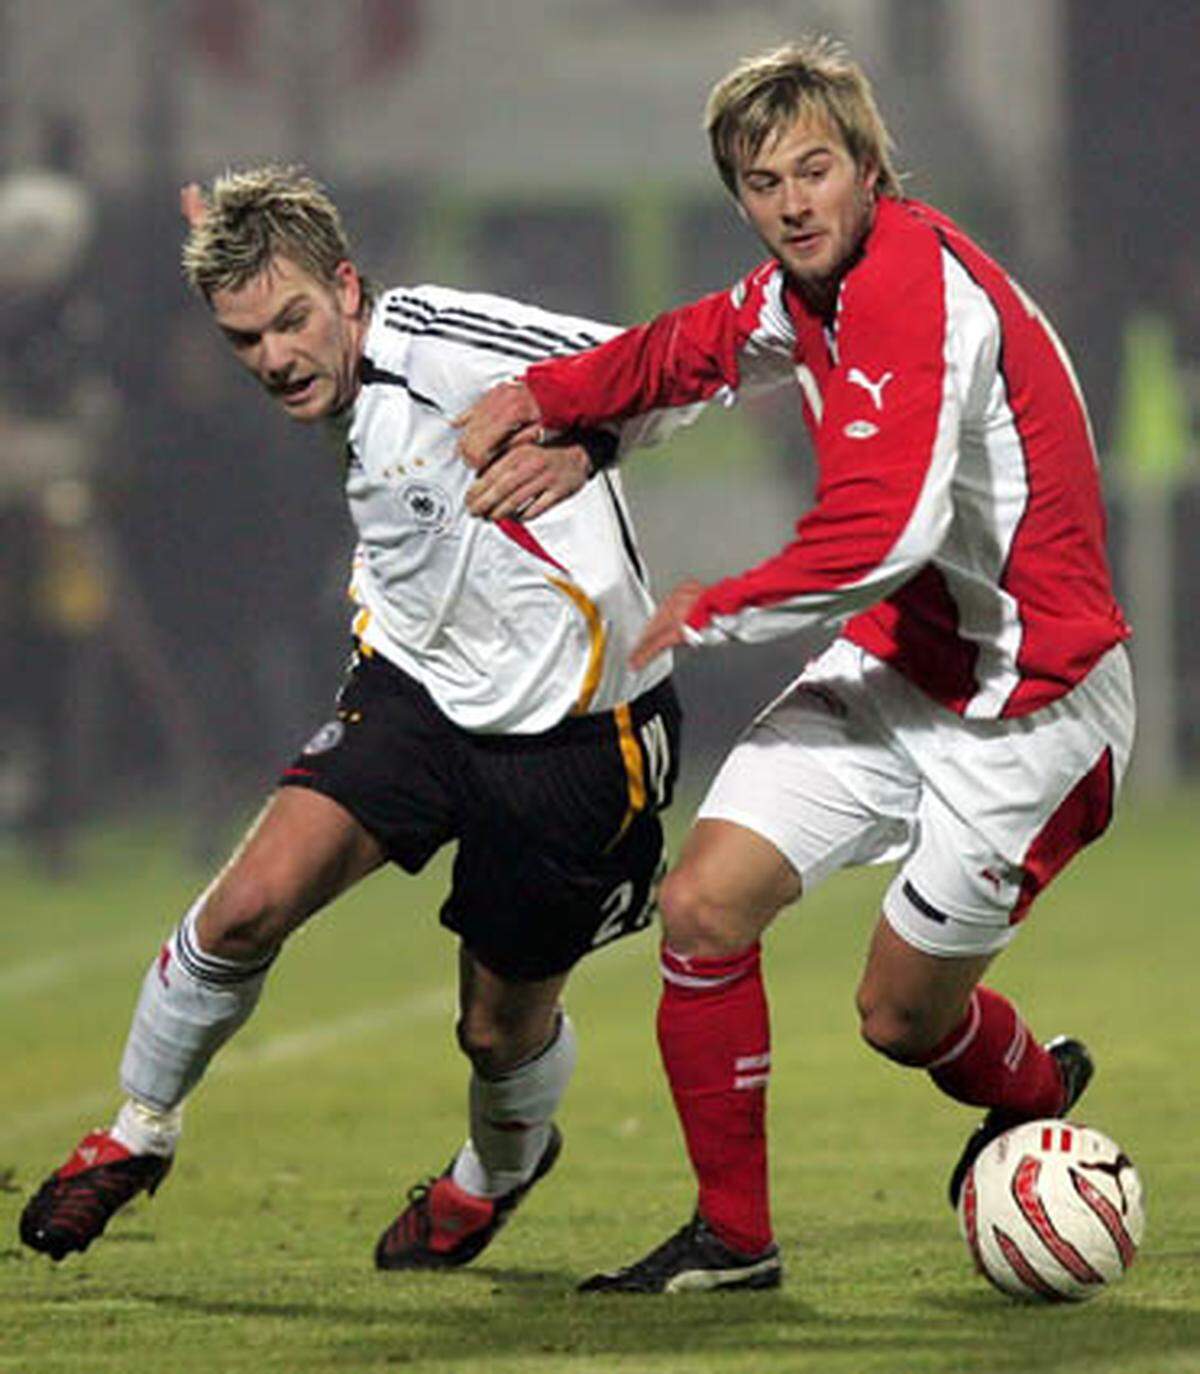 Starke Leistungen bei der SV Ried brachten Lasnik im Sommer 2005 einen Vertrag bei der Wiener Austria und im Oktober 2005 das erste und einzige Spiel im ÖFB-Team. Im ersten Spiel der Post-Krankl-Ära schnappte der heutige Aachener unter Willi Ruttensteiner seine neun Minuten Teamluft - aber immerhin im Old Trafford-Stadion gegen England (0:1).